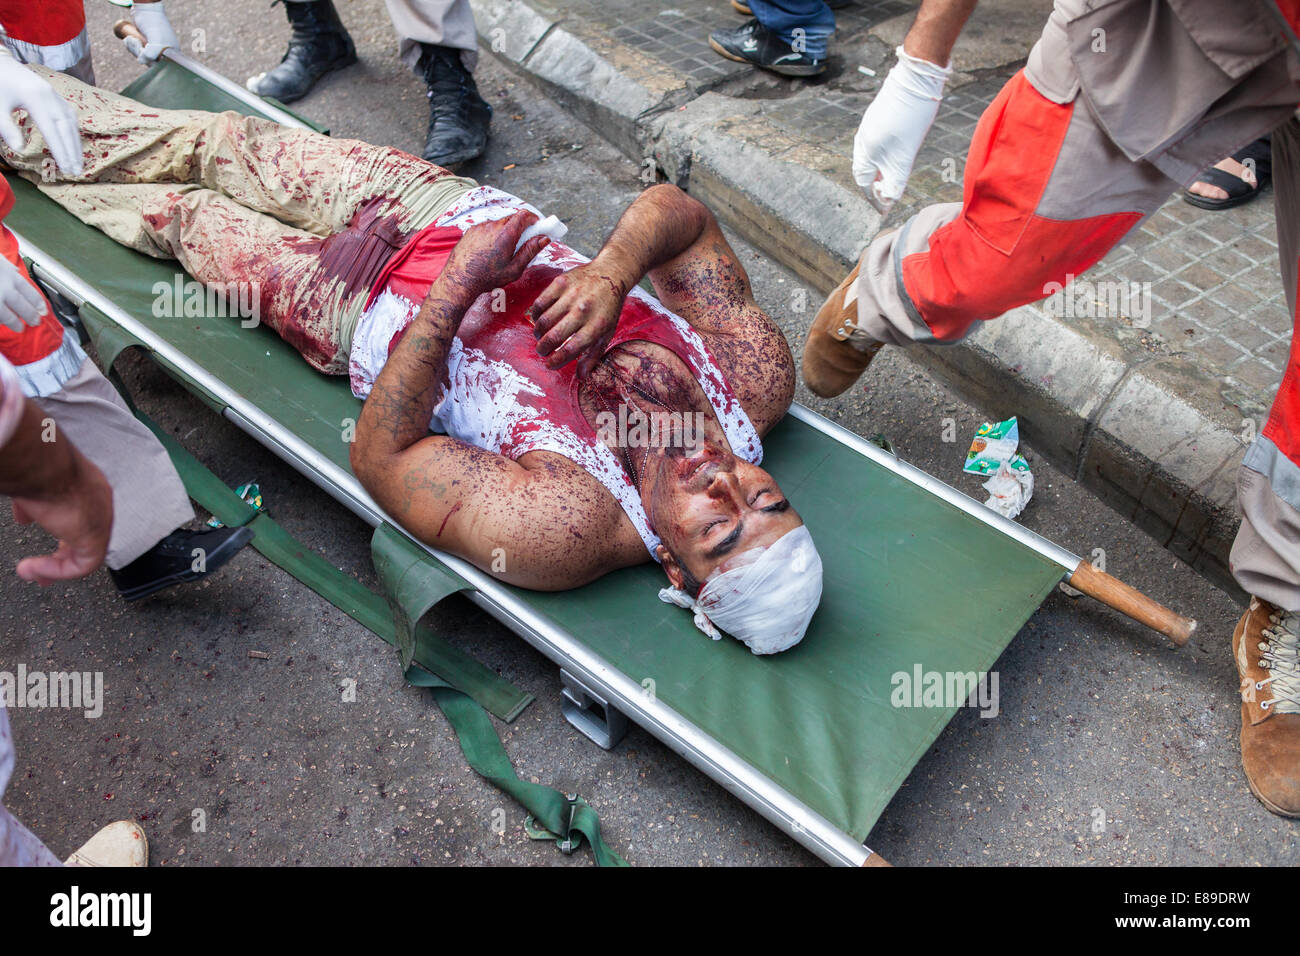 L'homme musulman chiite, couvert de son propre sang, de recevoir des soins médicaux après l'évanouissement, sur Achoura Journée à Nabatieh, Liban. Banque D'Images